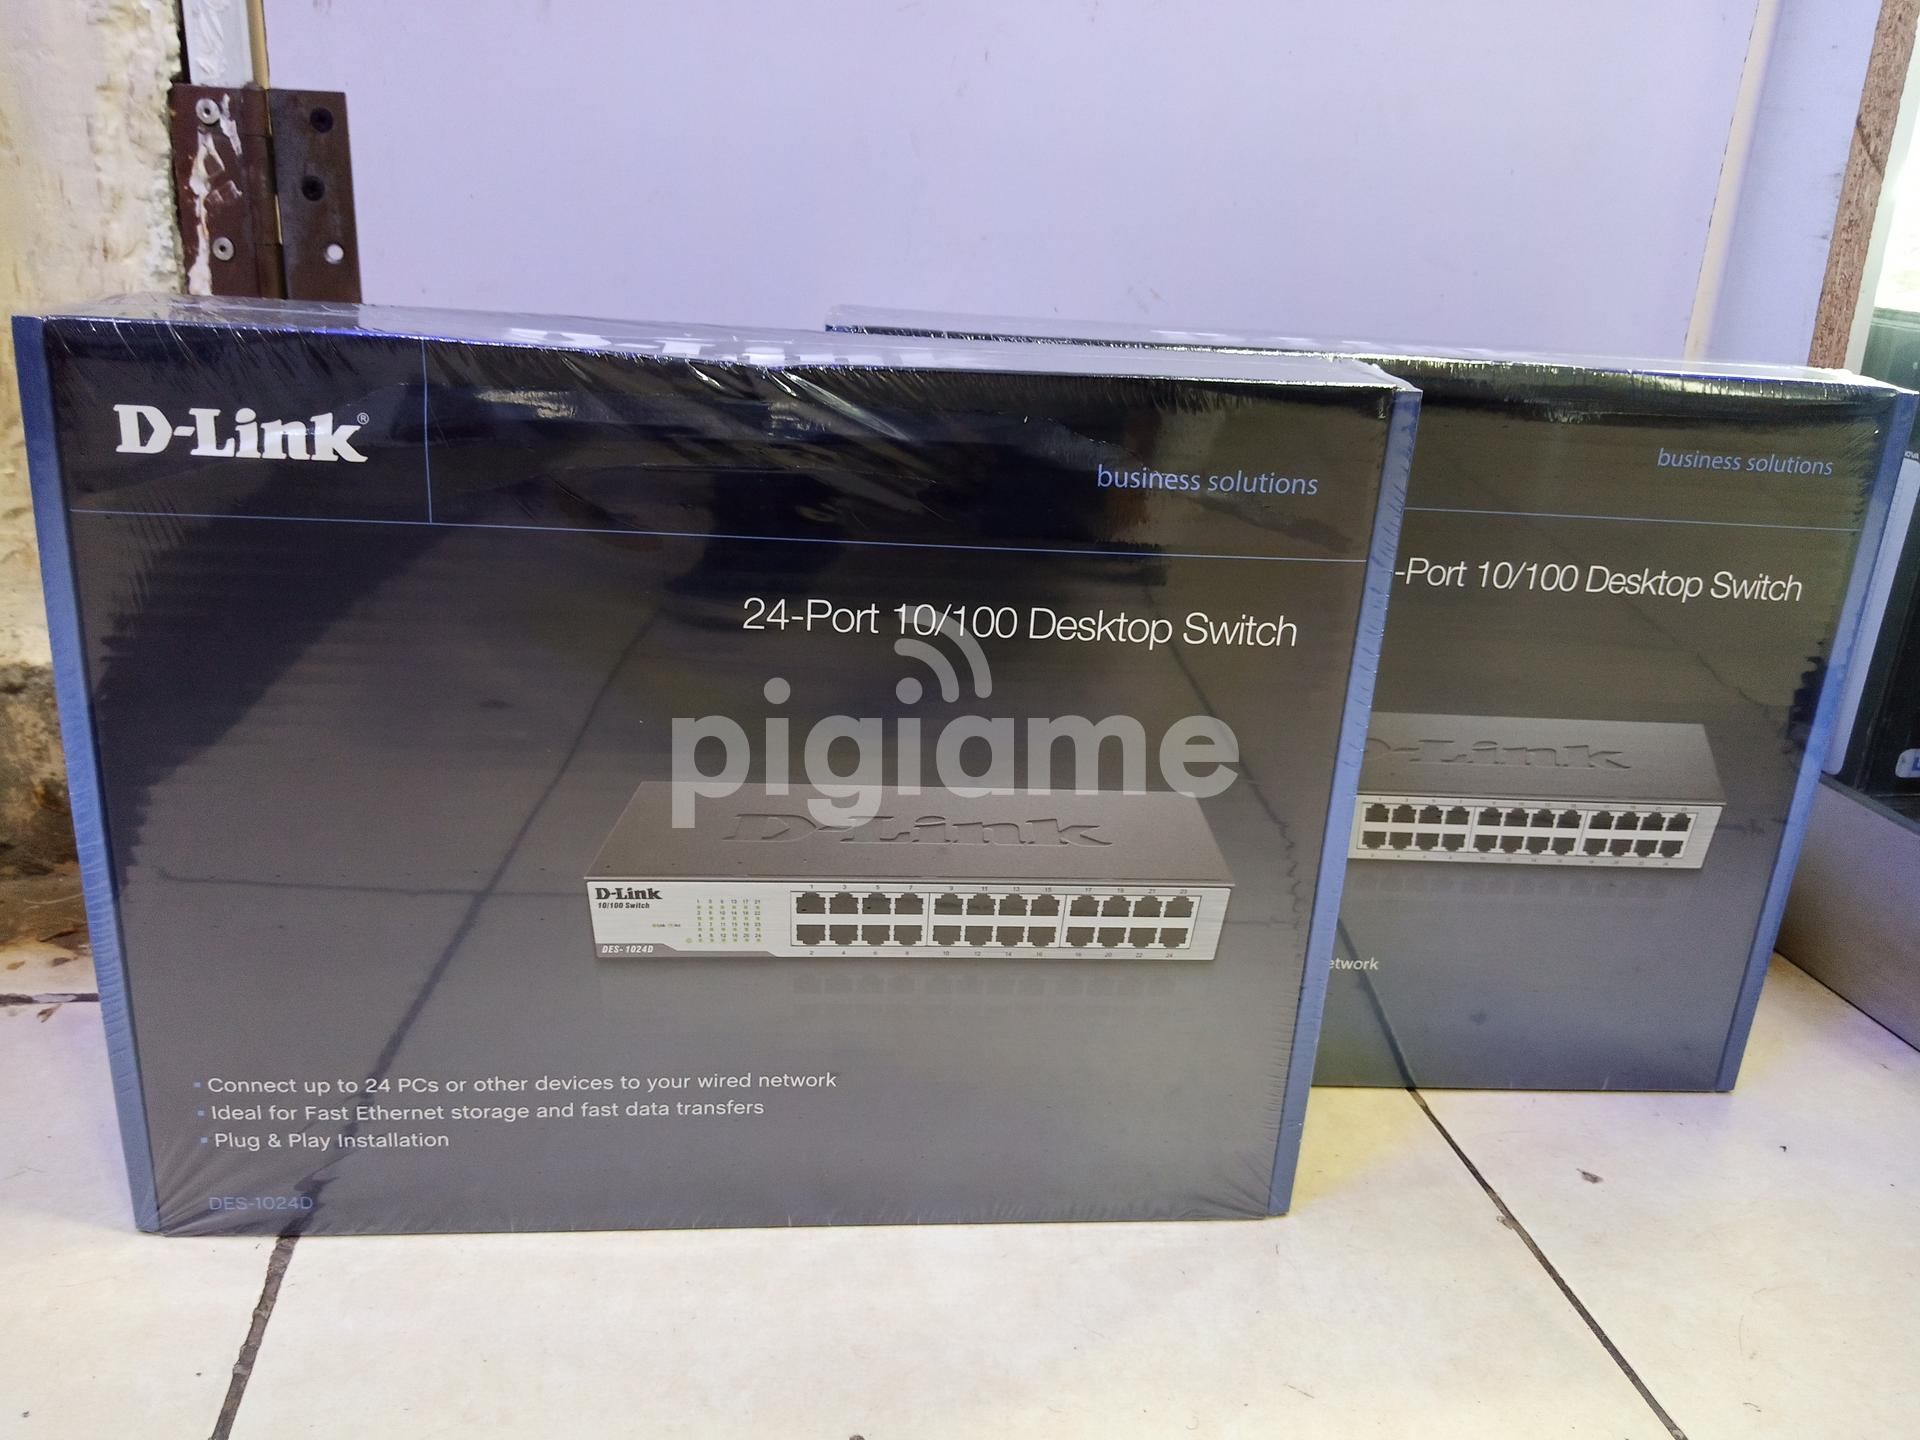 D-Link DES-1024D, Unmanaged 24 Port Ethernet Switch UK